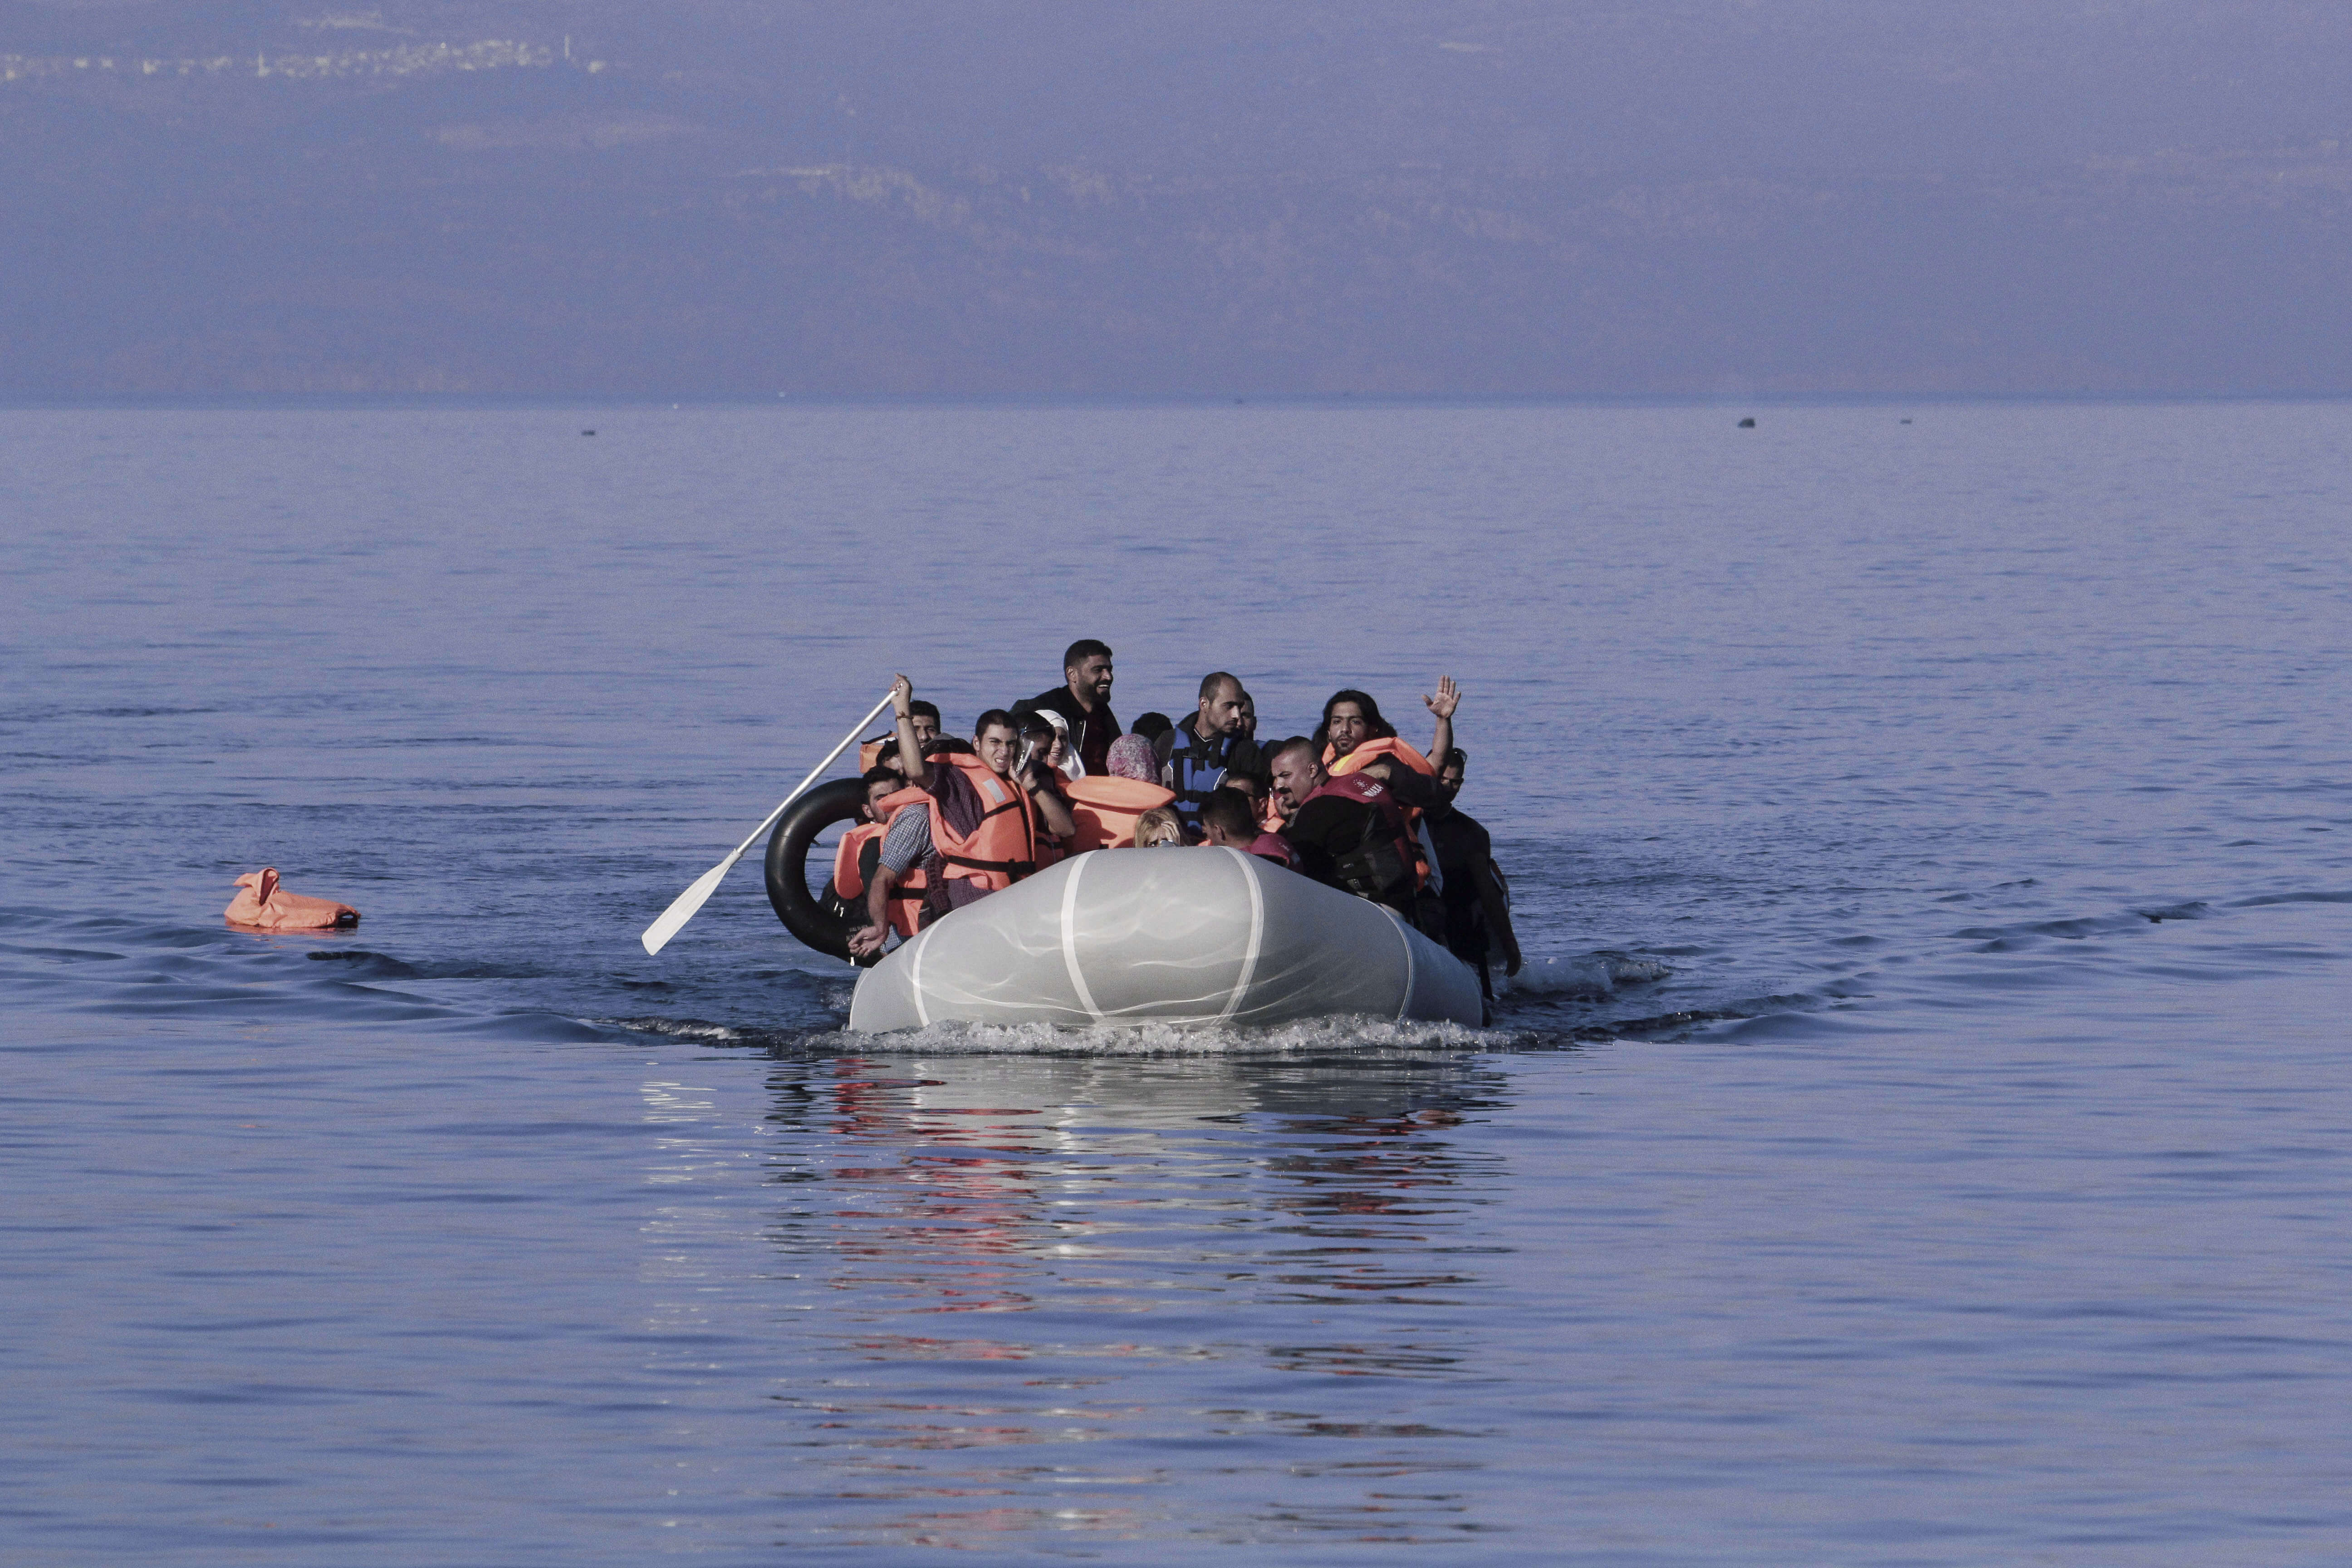 Βόρειο Αιγαίο: Νέες αφίξεις προσφύγων σε Λέσβο και Χίο – Έφτασαν στα νησιά με 6 βάρκες!